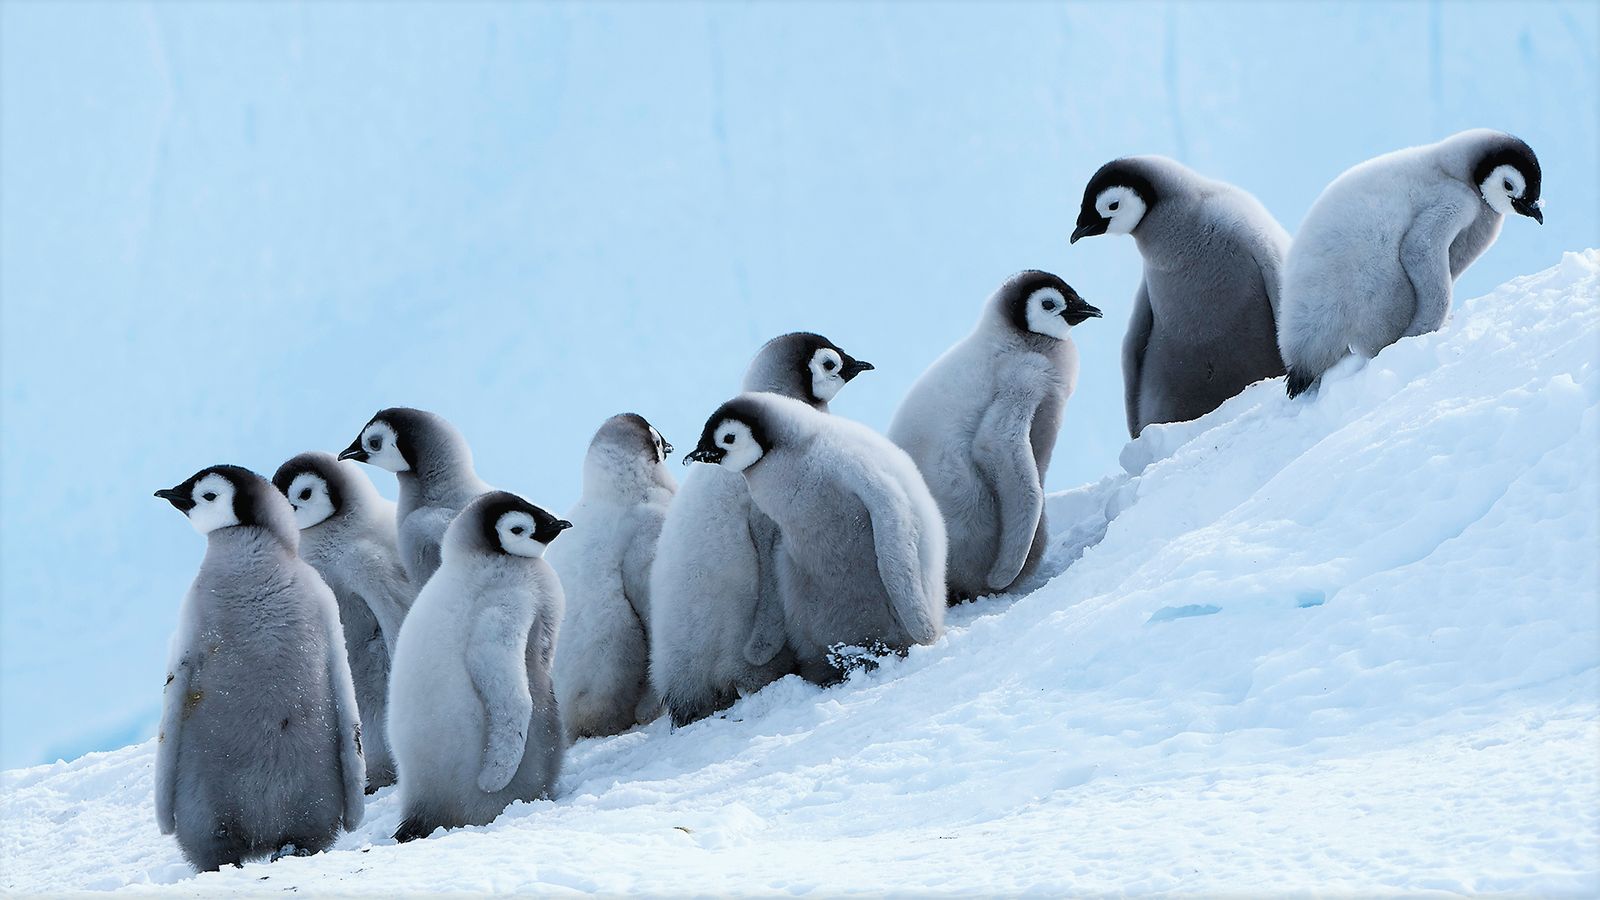 Penguin Background Image Awb